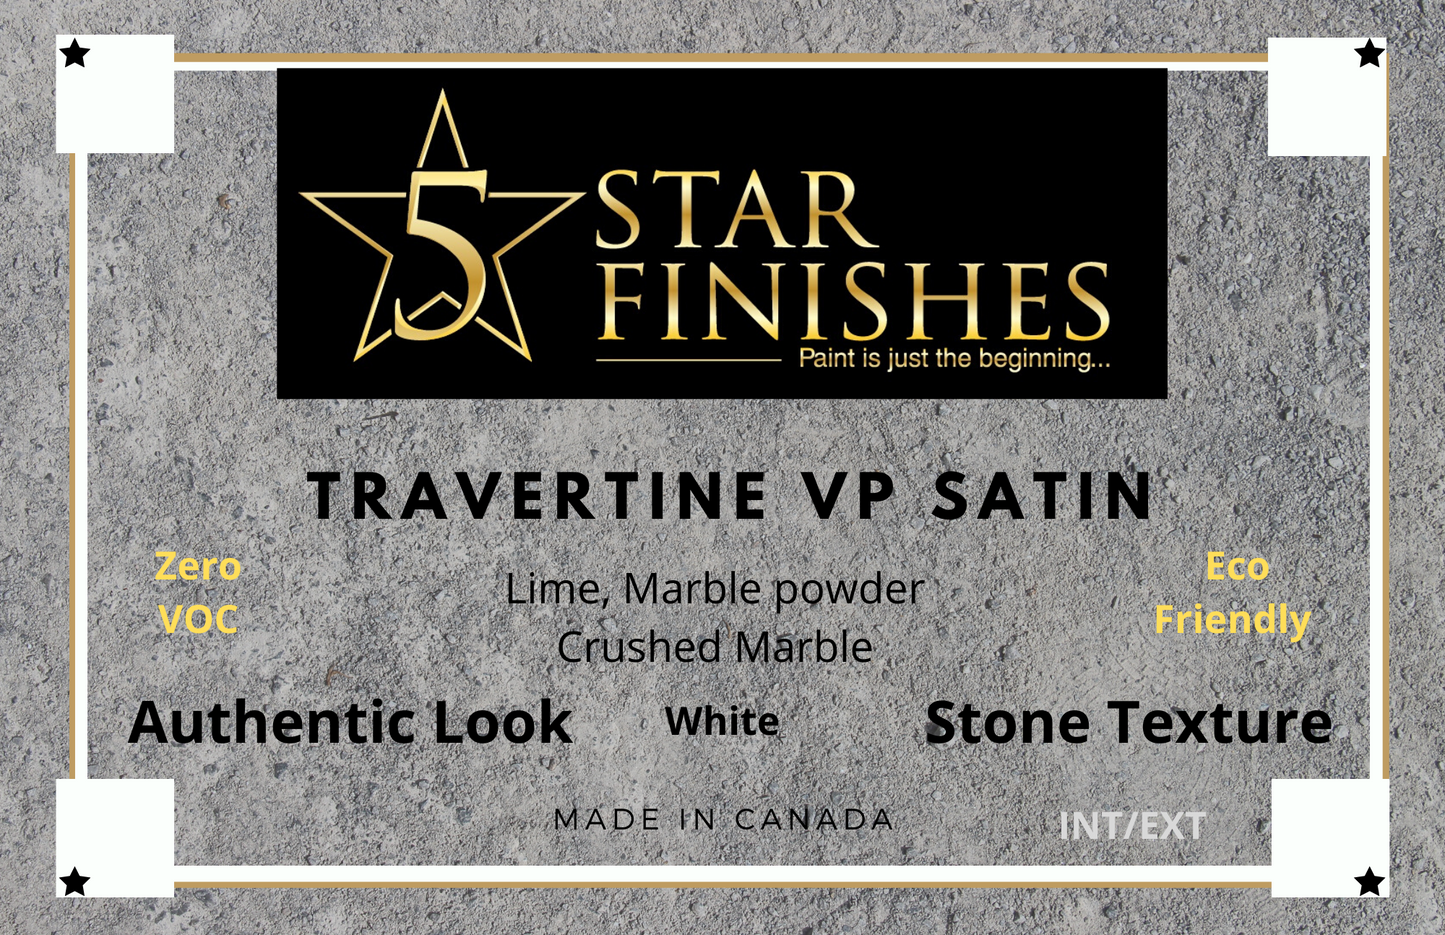 VP Satin Travertine - 5 Star Finishes Ltd